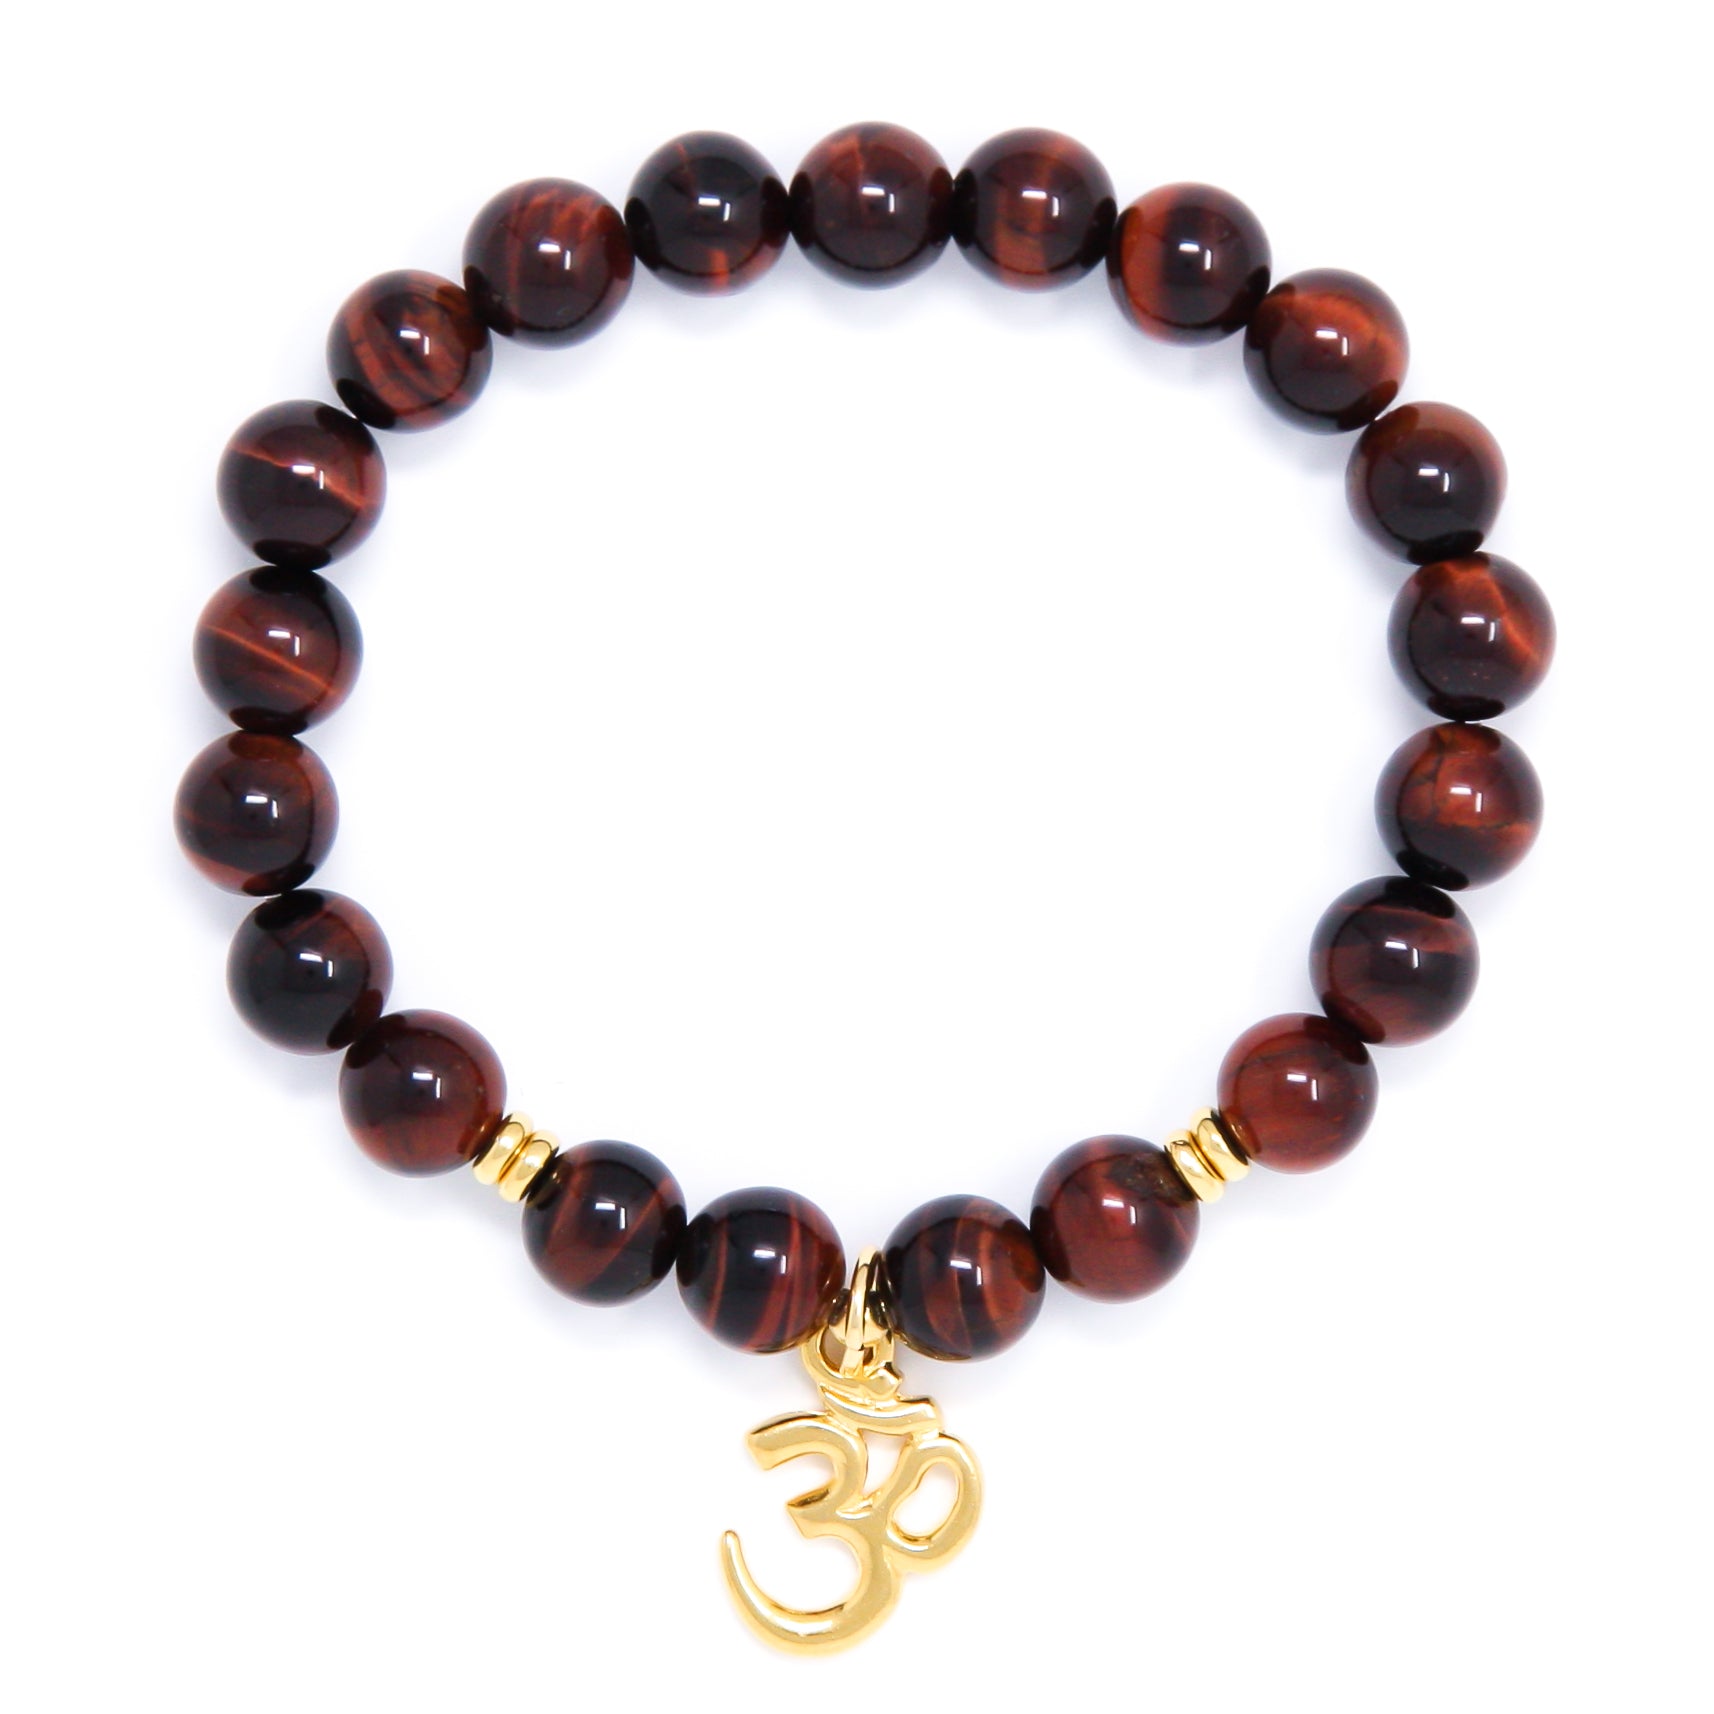 Red Tiger’s Eye Mala Bracelet with Om, yoga jewelry